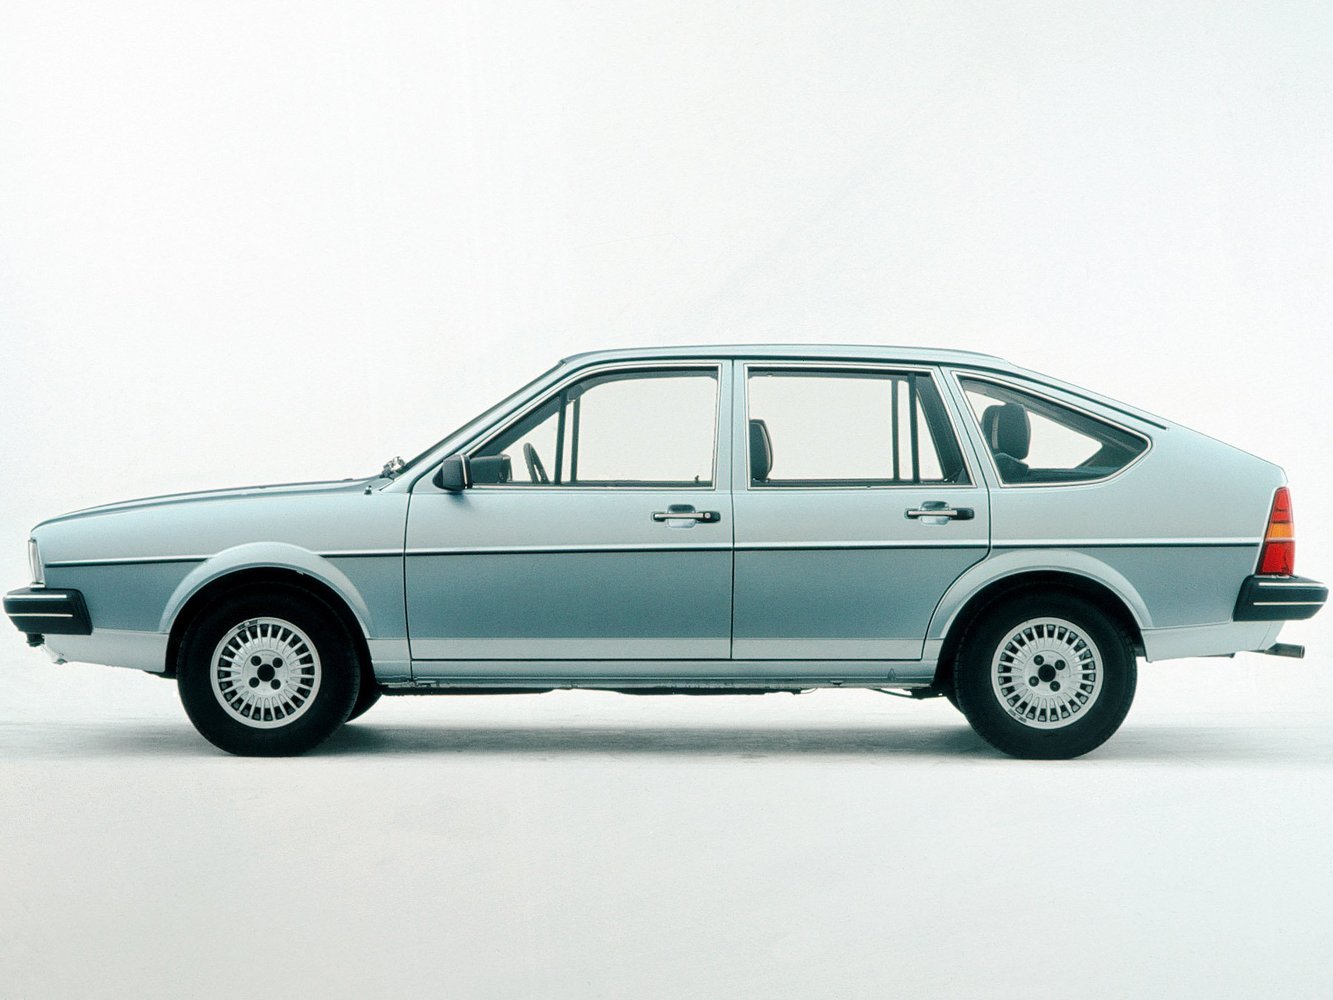 хэтчбек 5 дв. Volkswagen Passat 1980 - 1988г выпуска модификация 1.3 MT (55 л.с.)